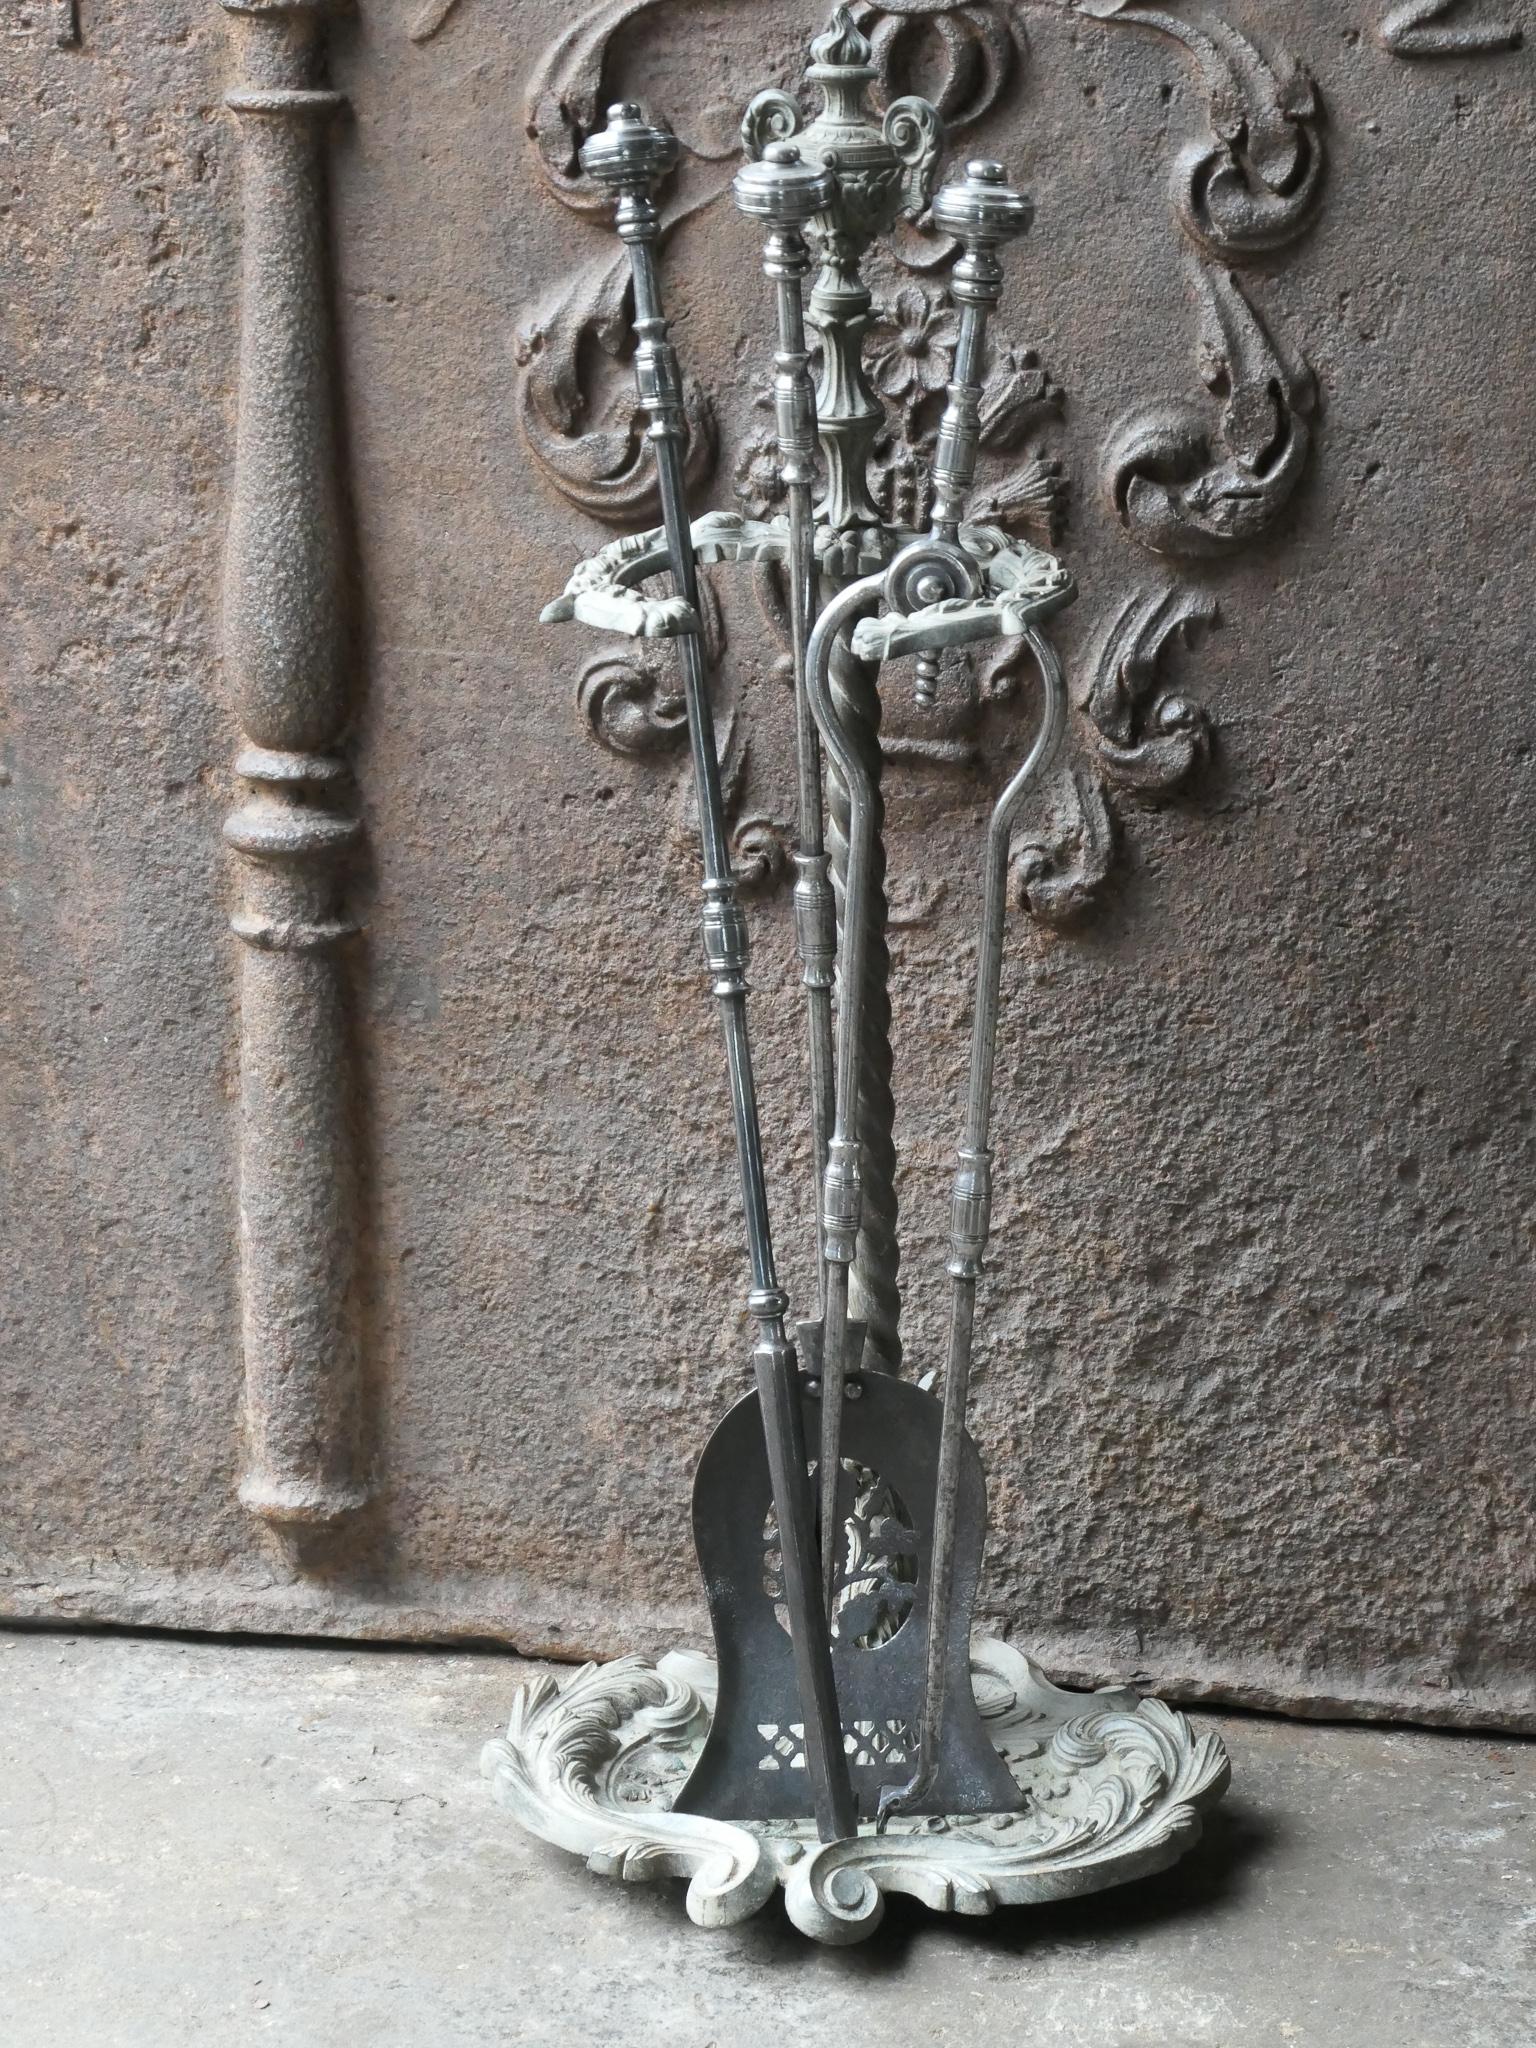 Grand ensemble de compagnons de feu géorgien anglais du 18e-19e siècle avec de belles décorations. L'ensemble d'outils comprend une pince, une pelle, un tisonnier et un support. Fabriqué en laiton (support) et en acier poli (outils). Le produit